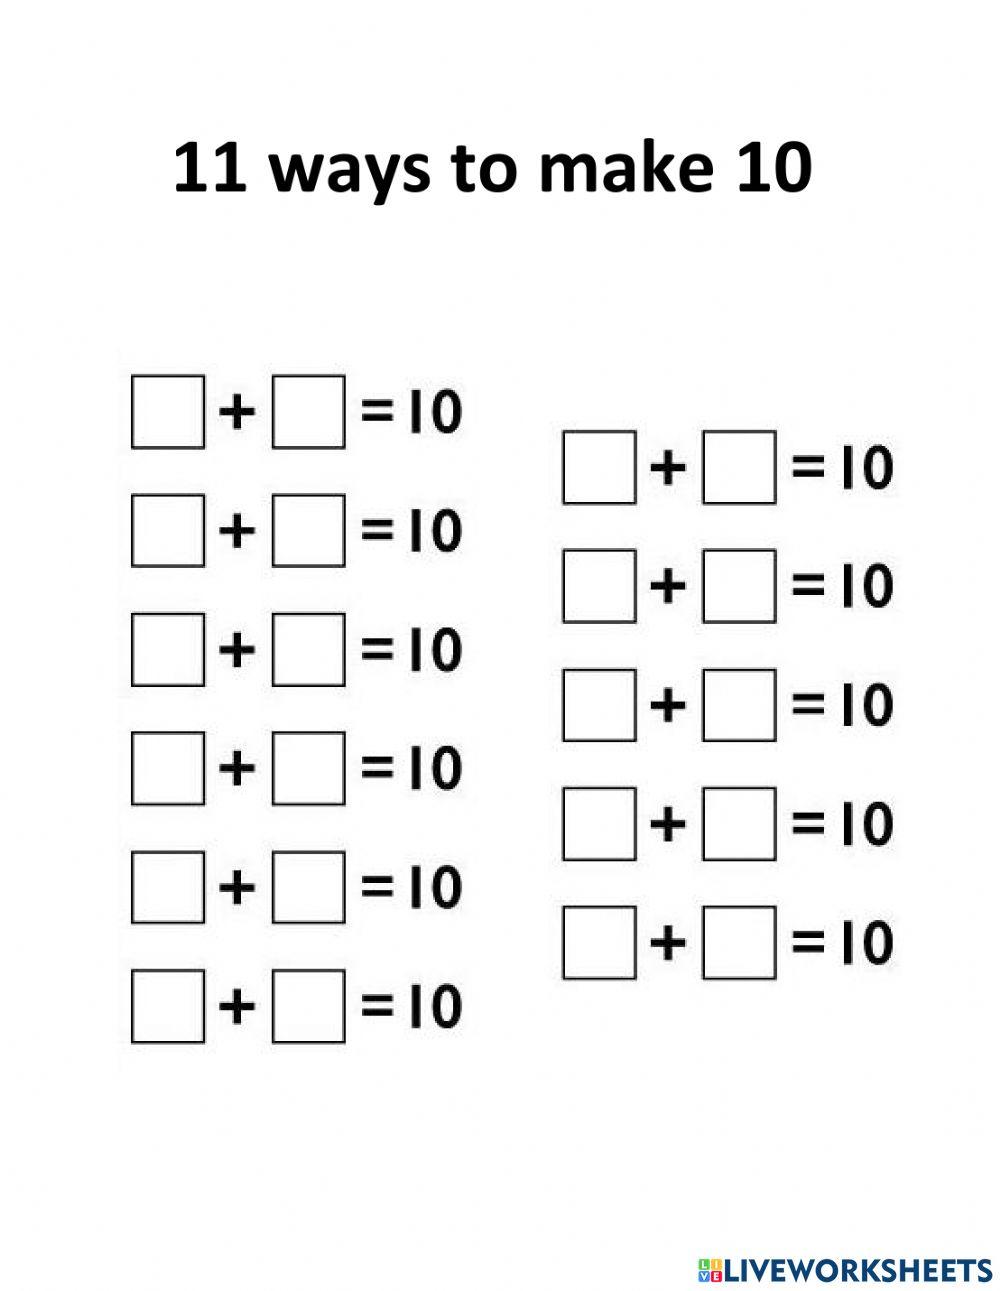 11 ways to make 10